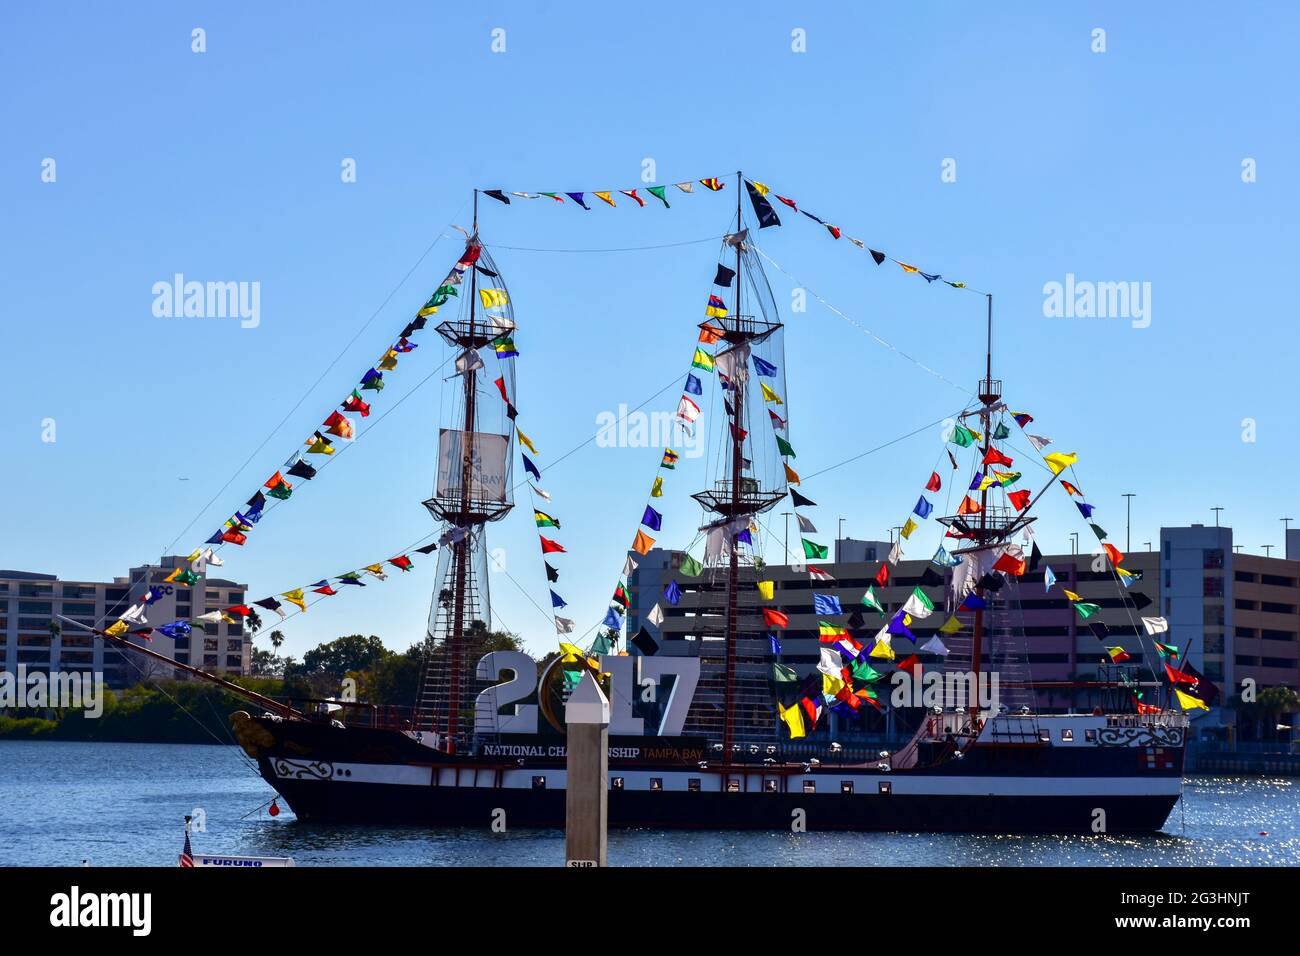 Navigando intorno alla Baia di Tampa, l'alta nave Jose Gasparilla è decorata per il campionato nazionale di calcio del 2017. Foto Stock